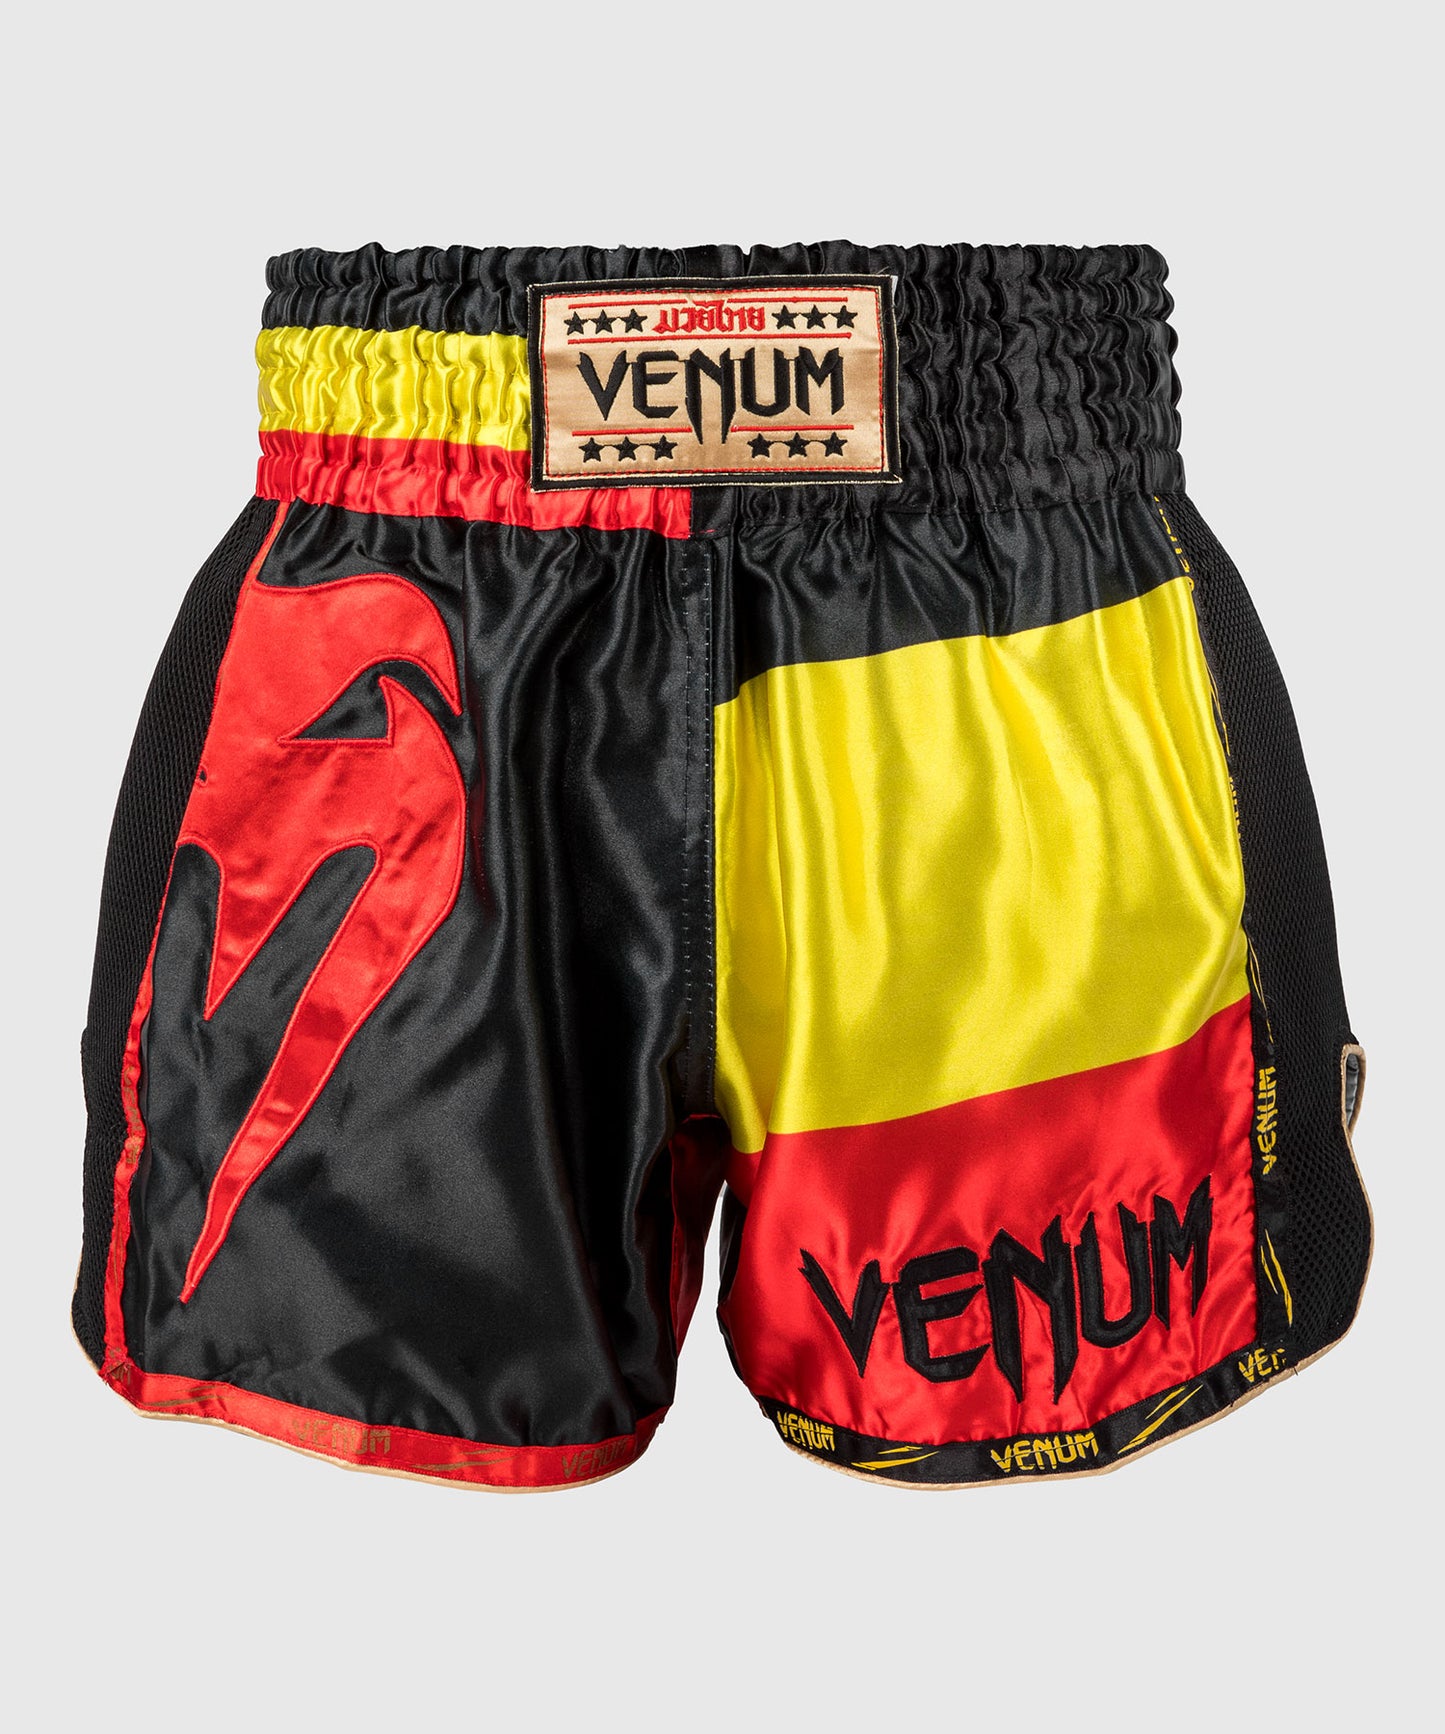 Venum Giant Pantaloncini da Muay Thai - Nero/Giallo/Rosso